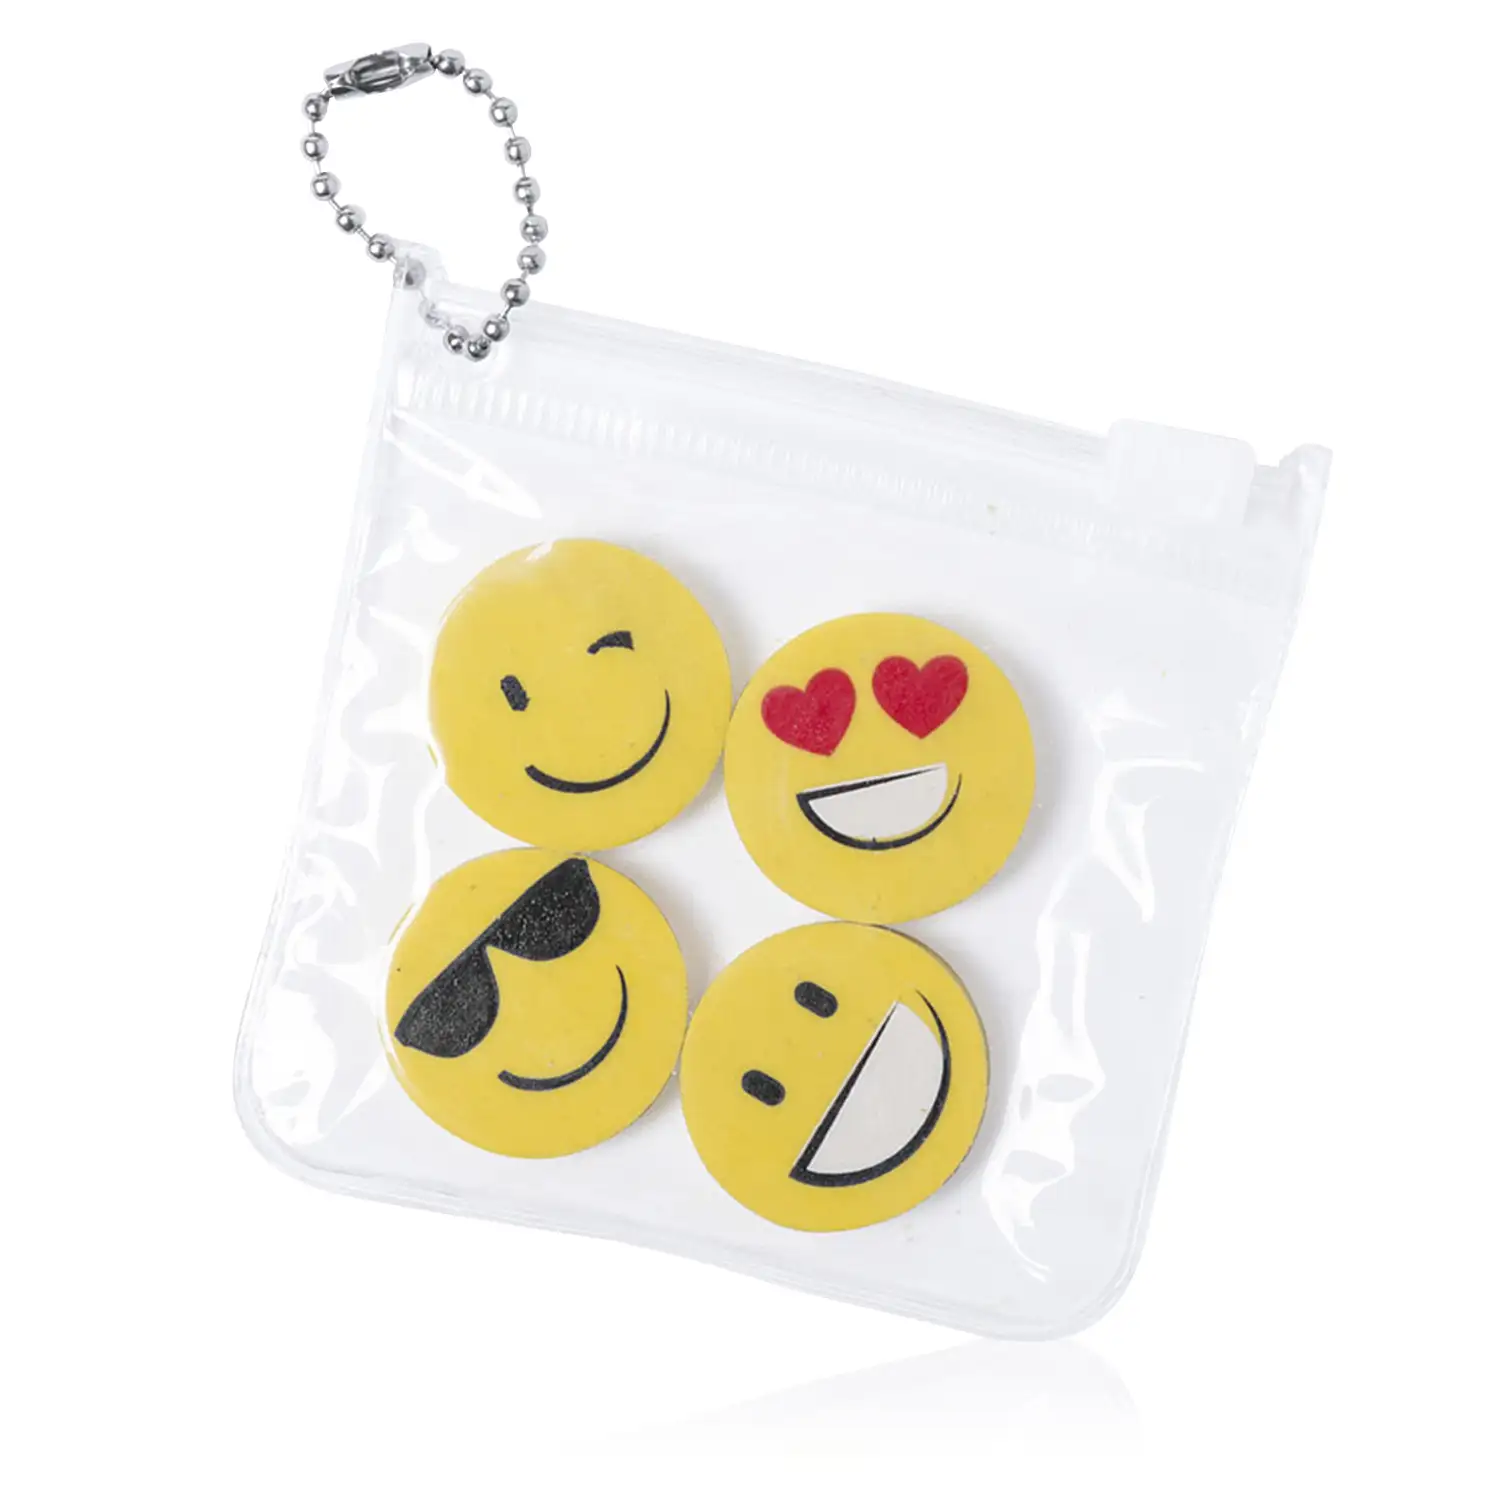 Mateky, set de 4 gomas diseños emoji con estuche con cierre zippery cadenita de transporte.